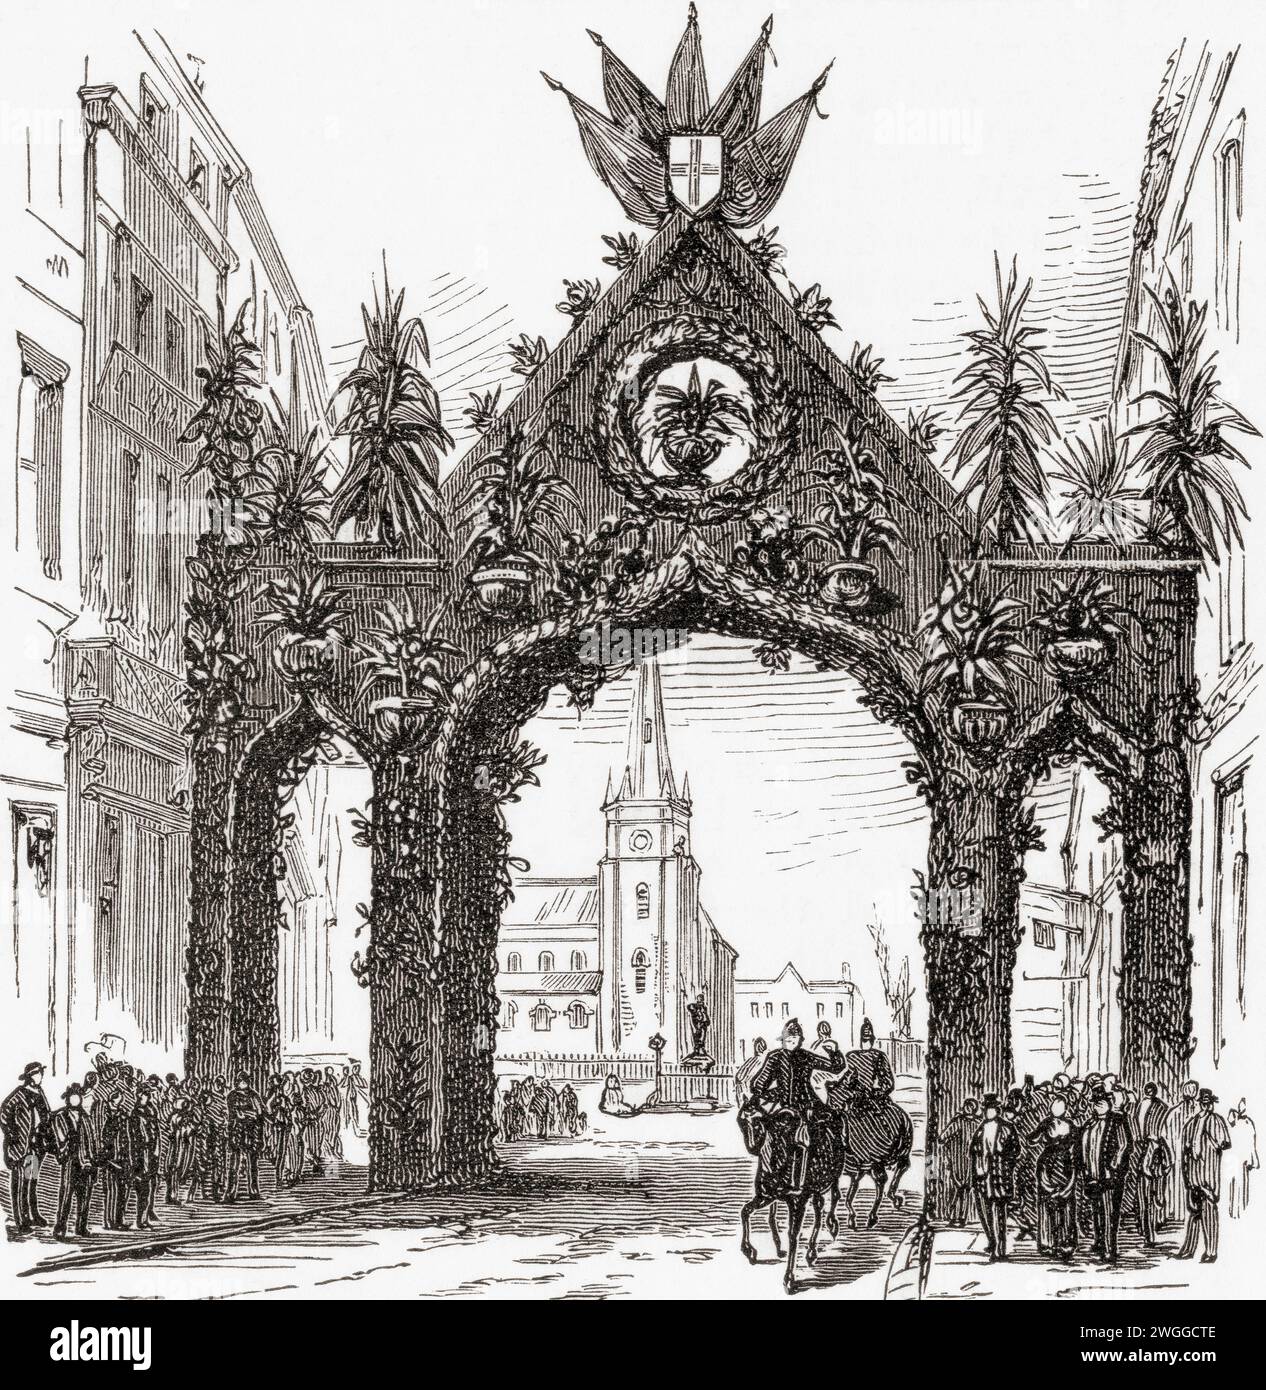 Der Floral Arch, Bullring, Birmingham, England, wurde anlässlich des Besuchs von Königin Victoria in Birmingham am 23. März 1887, dem Jahr des Goldenen Jubiläums, errichtet. From the London Illustrated News, veröffentlicht am 26. März 1887. Stockfoto